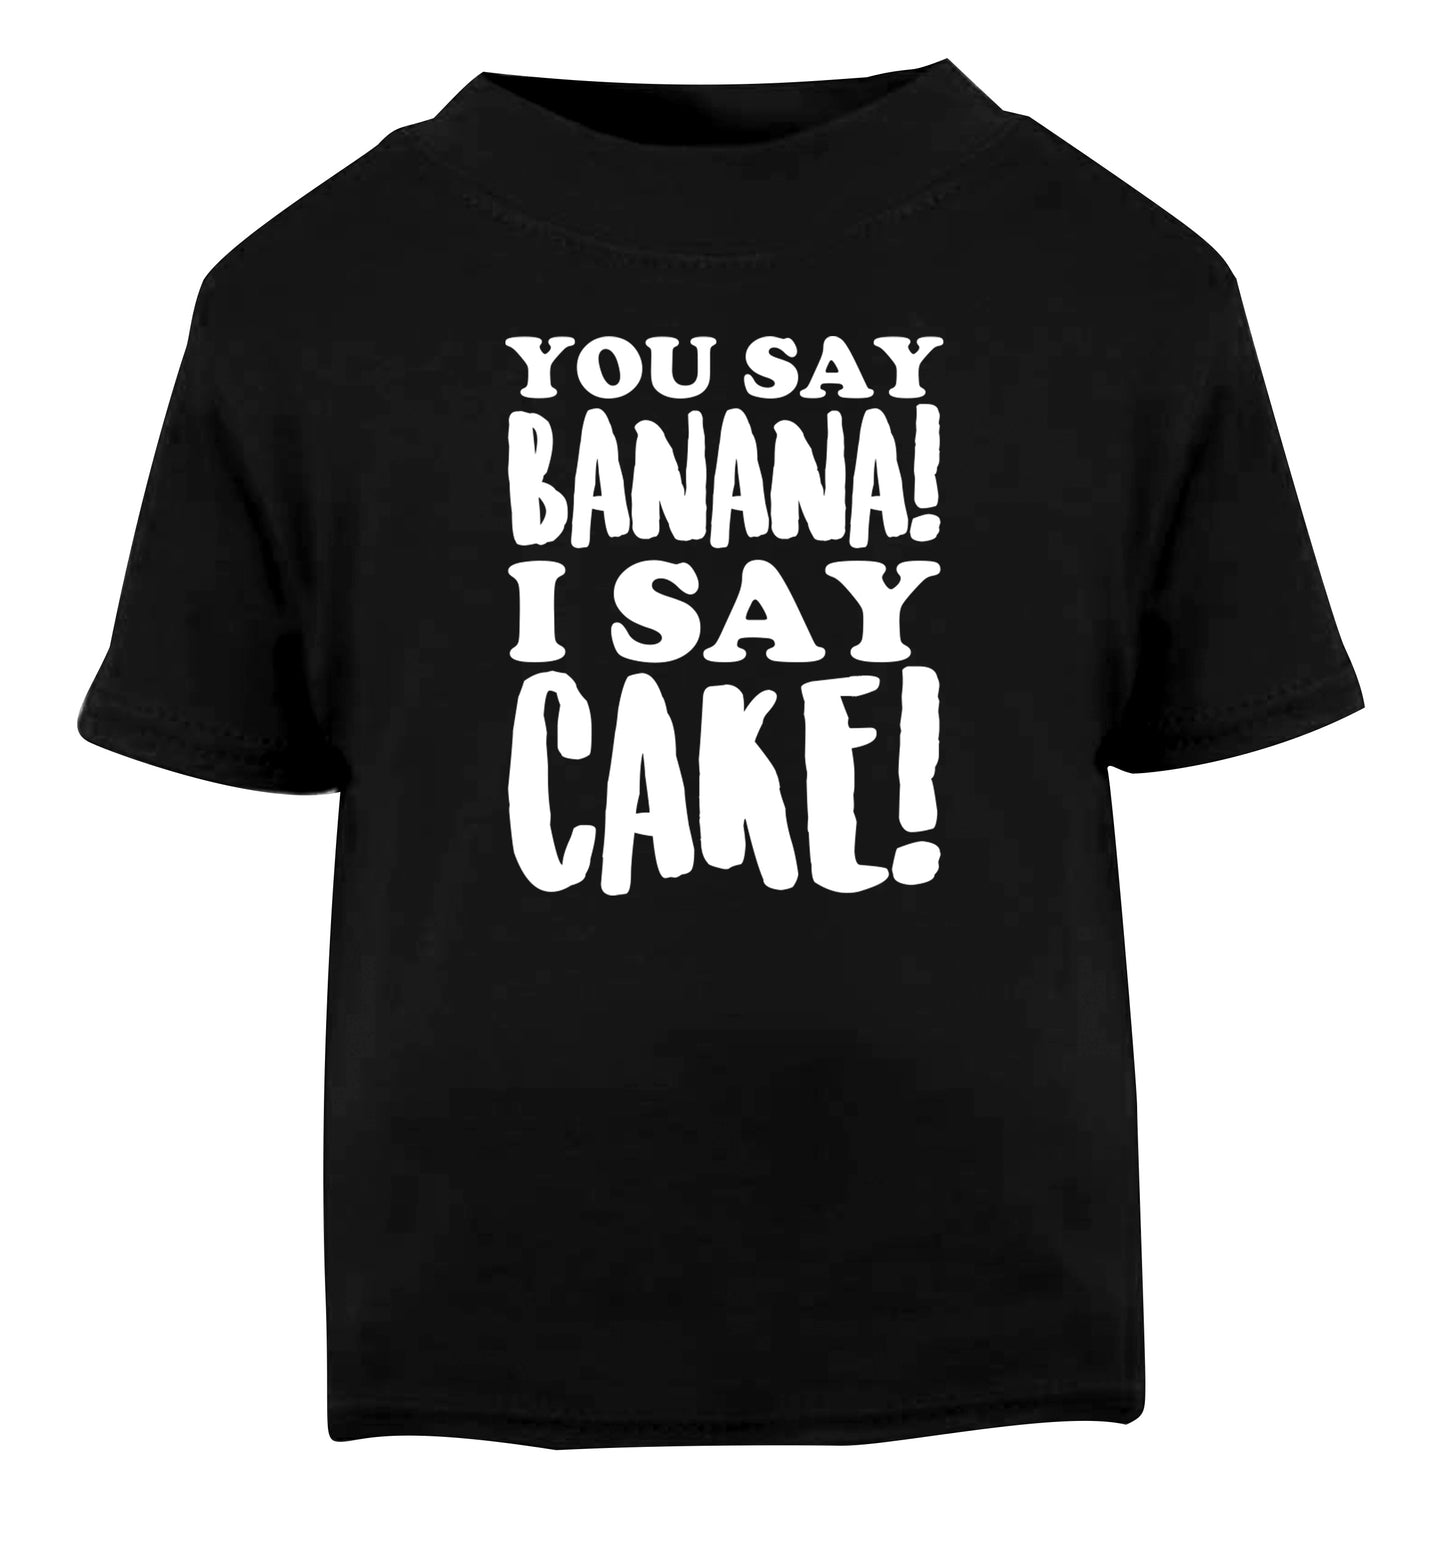 You say banana I say cake! Black Baby Toddler Tshirt 2 years